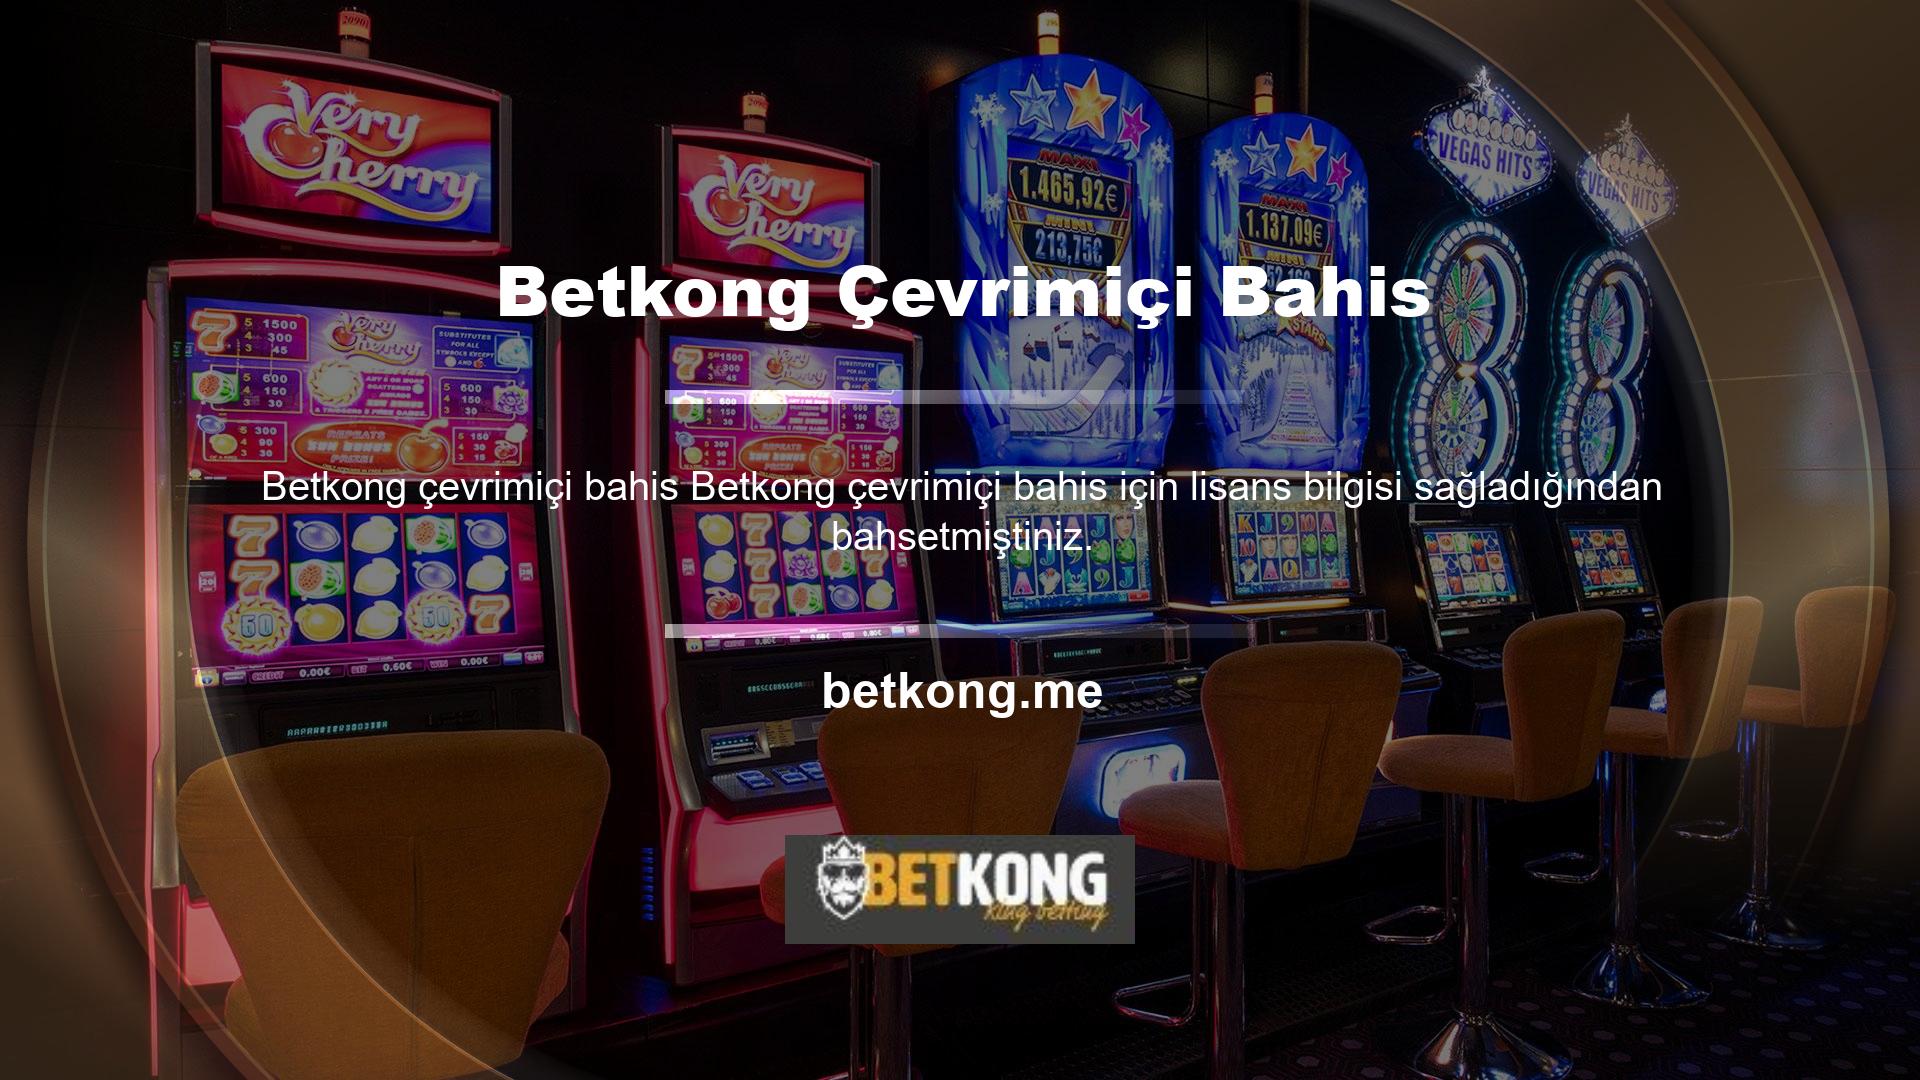 Betkong lisansı alma süreci nedir? Tüm lisanslı bahis siteleri gibi Betkong çevrimiçi casino sitesi de lisans bilgilerini hem üyelerin hem de oyuncuların giriş adreslerinde görünür hale getirir